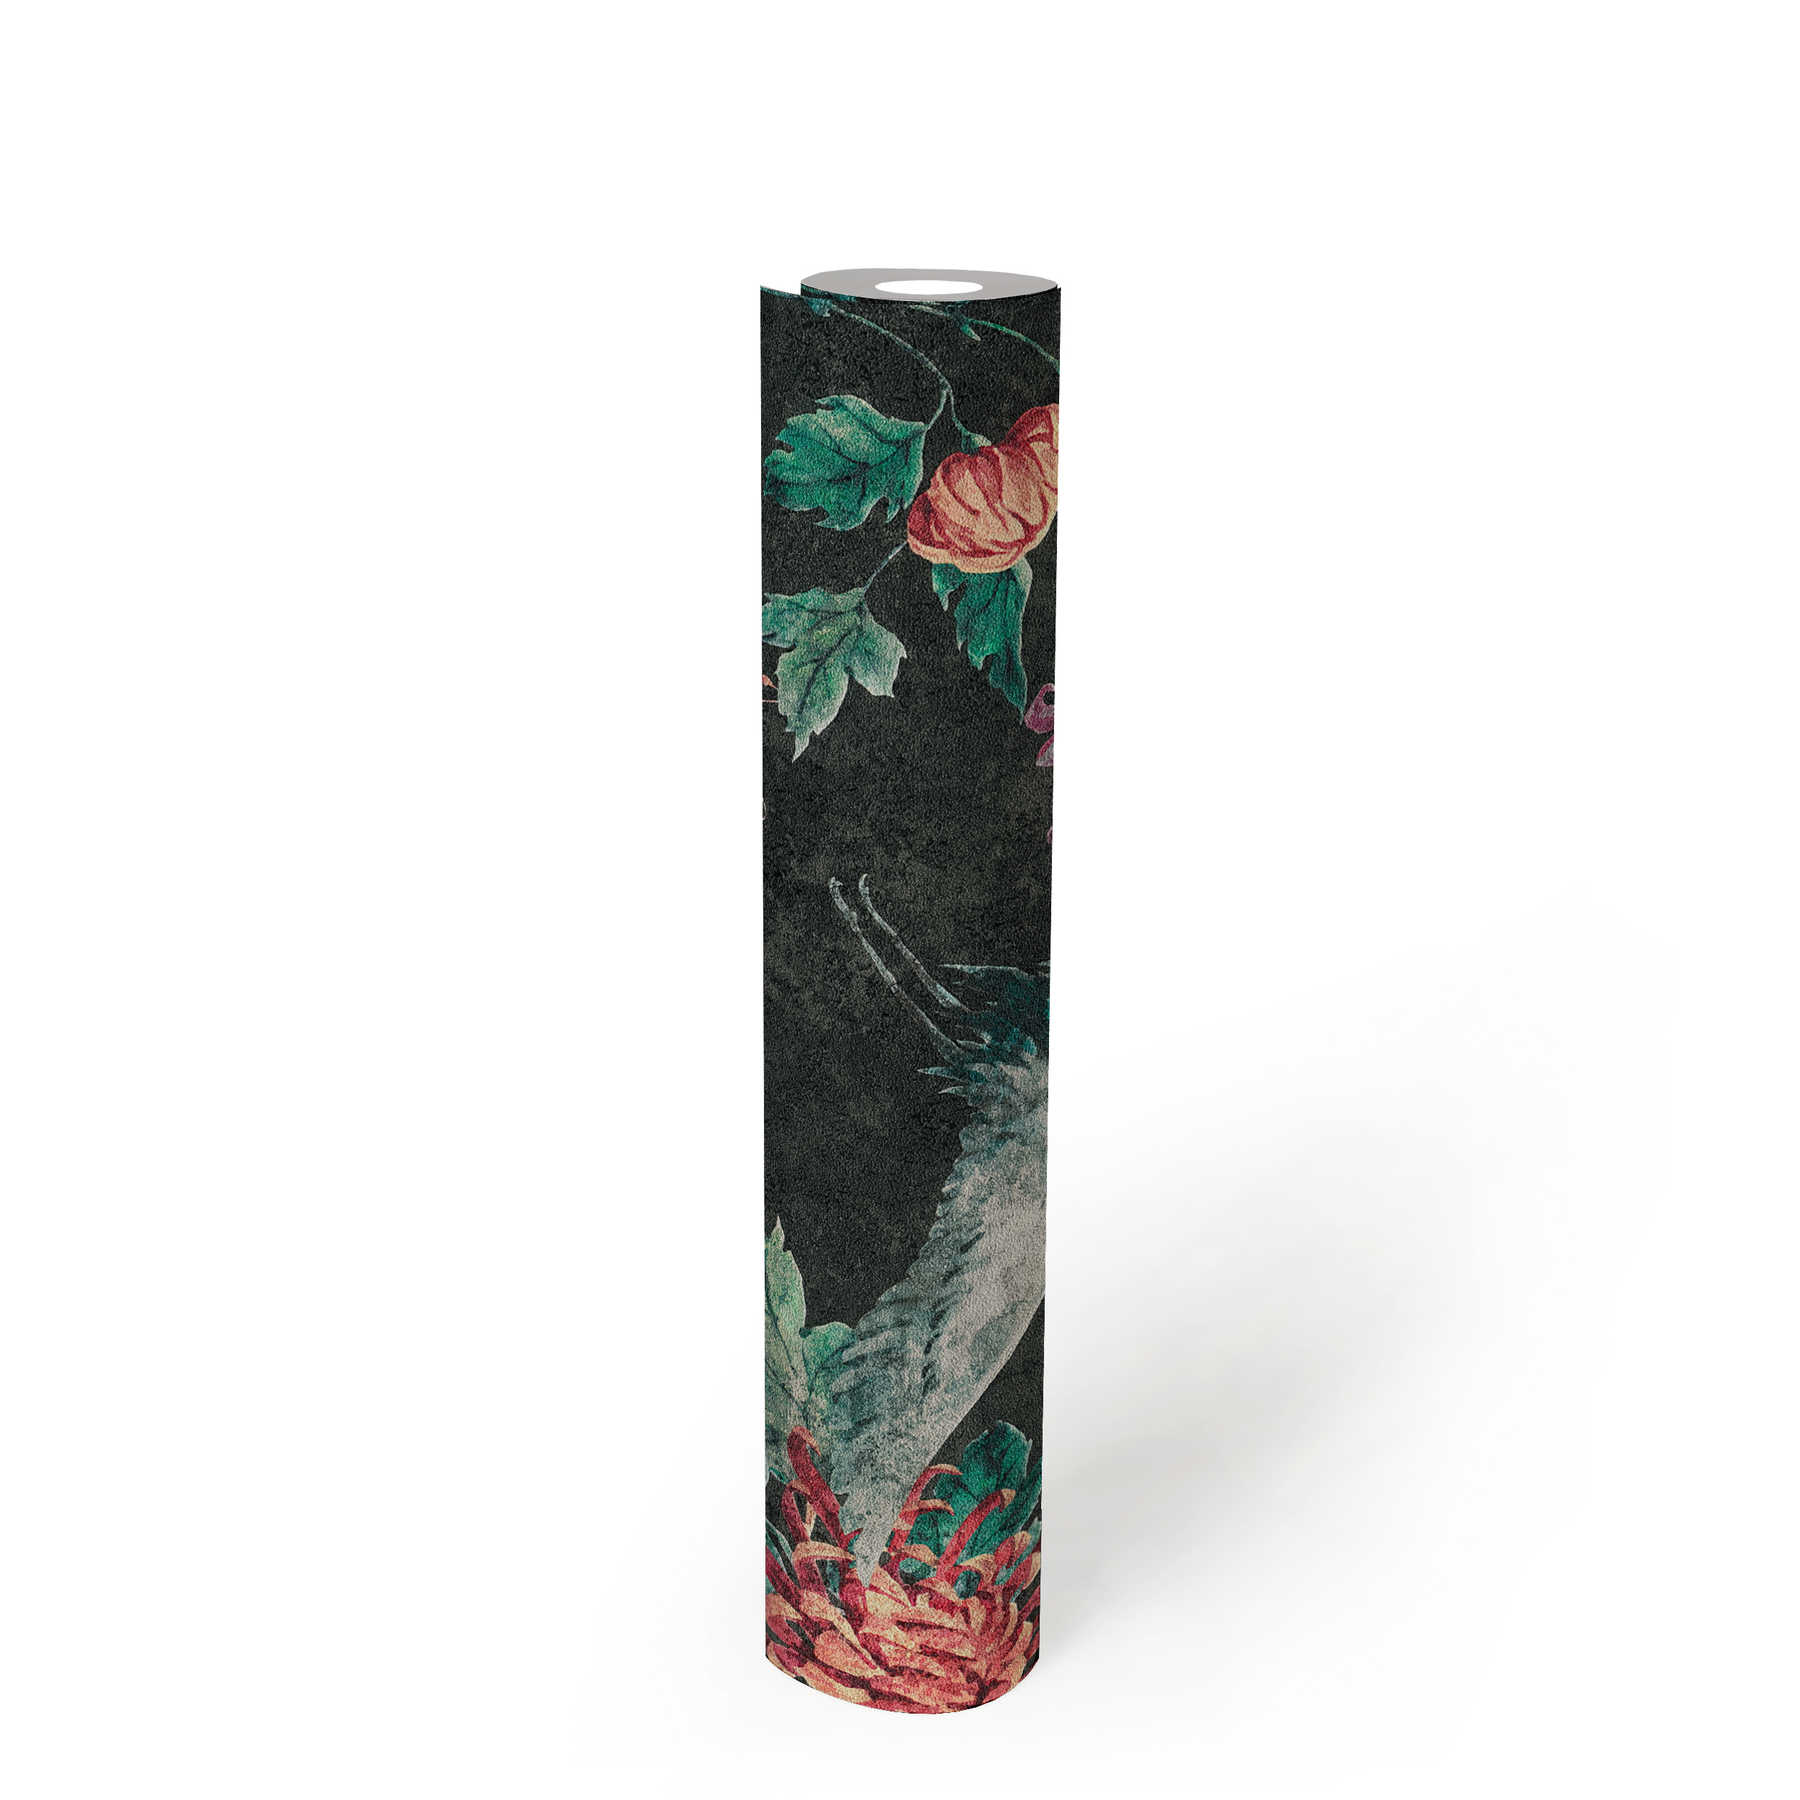             Papel pintado con motivos de grullas y flores asiáticas - negro, rojo, verde
        